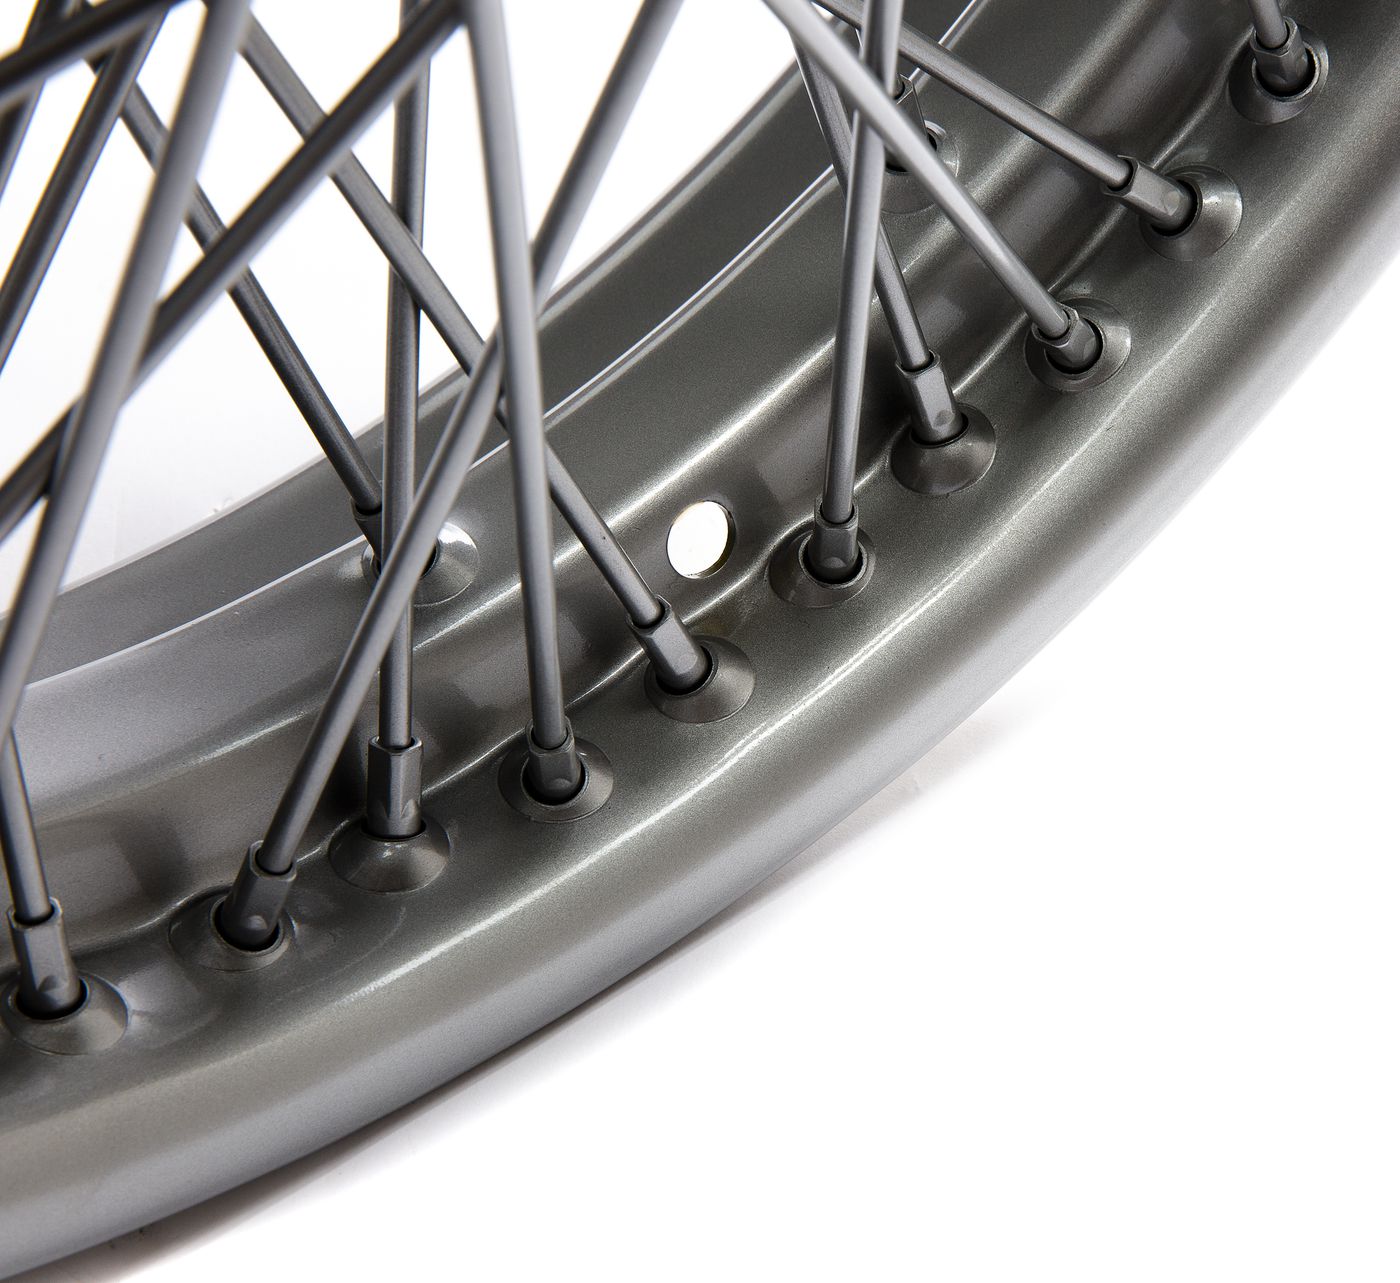 Speichenrad
Wire wheel
Roue à rayons
Koła szprychowe
Spaakwiel